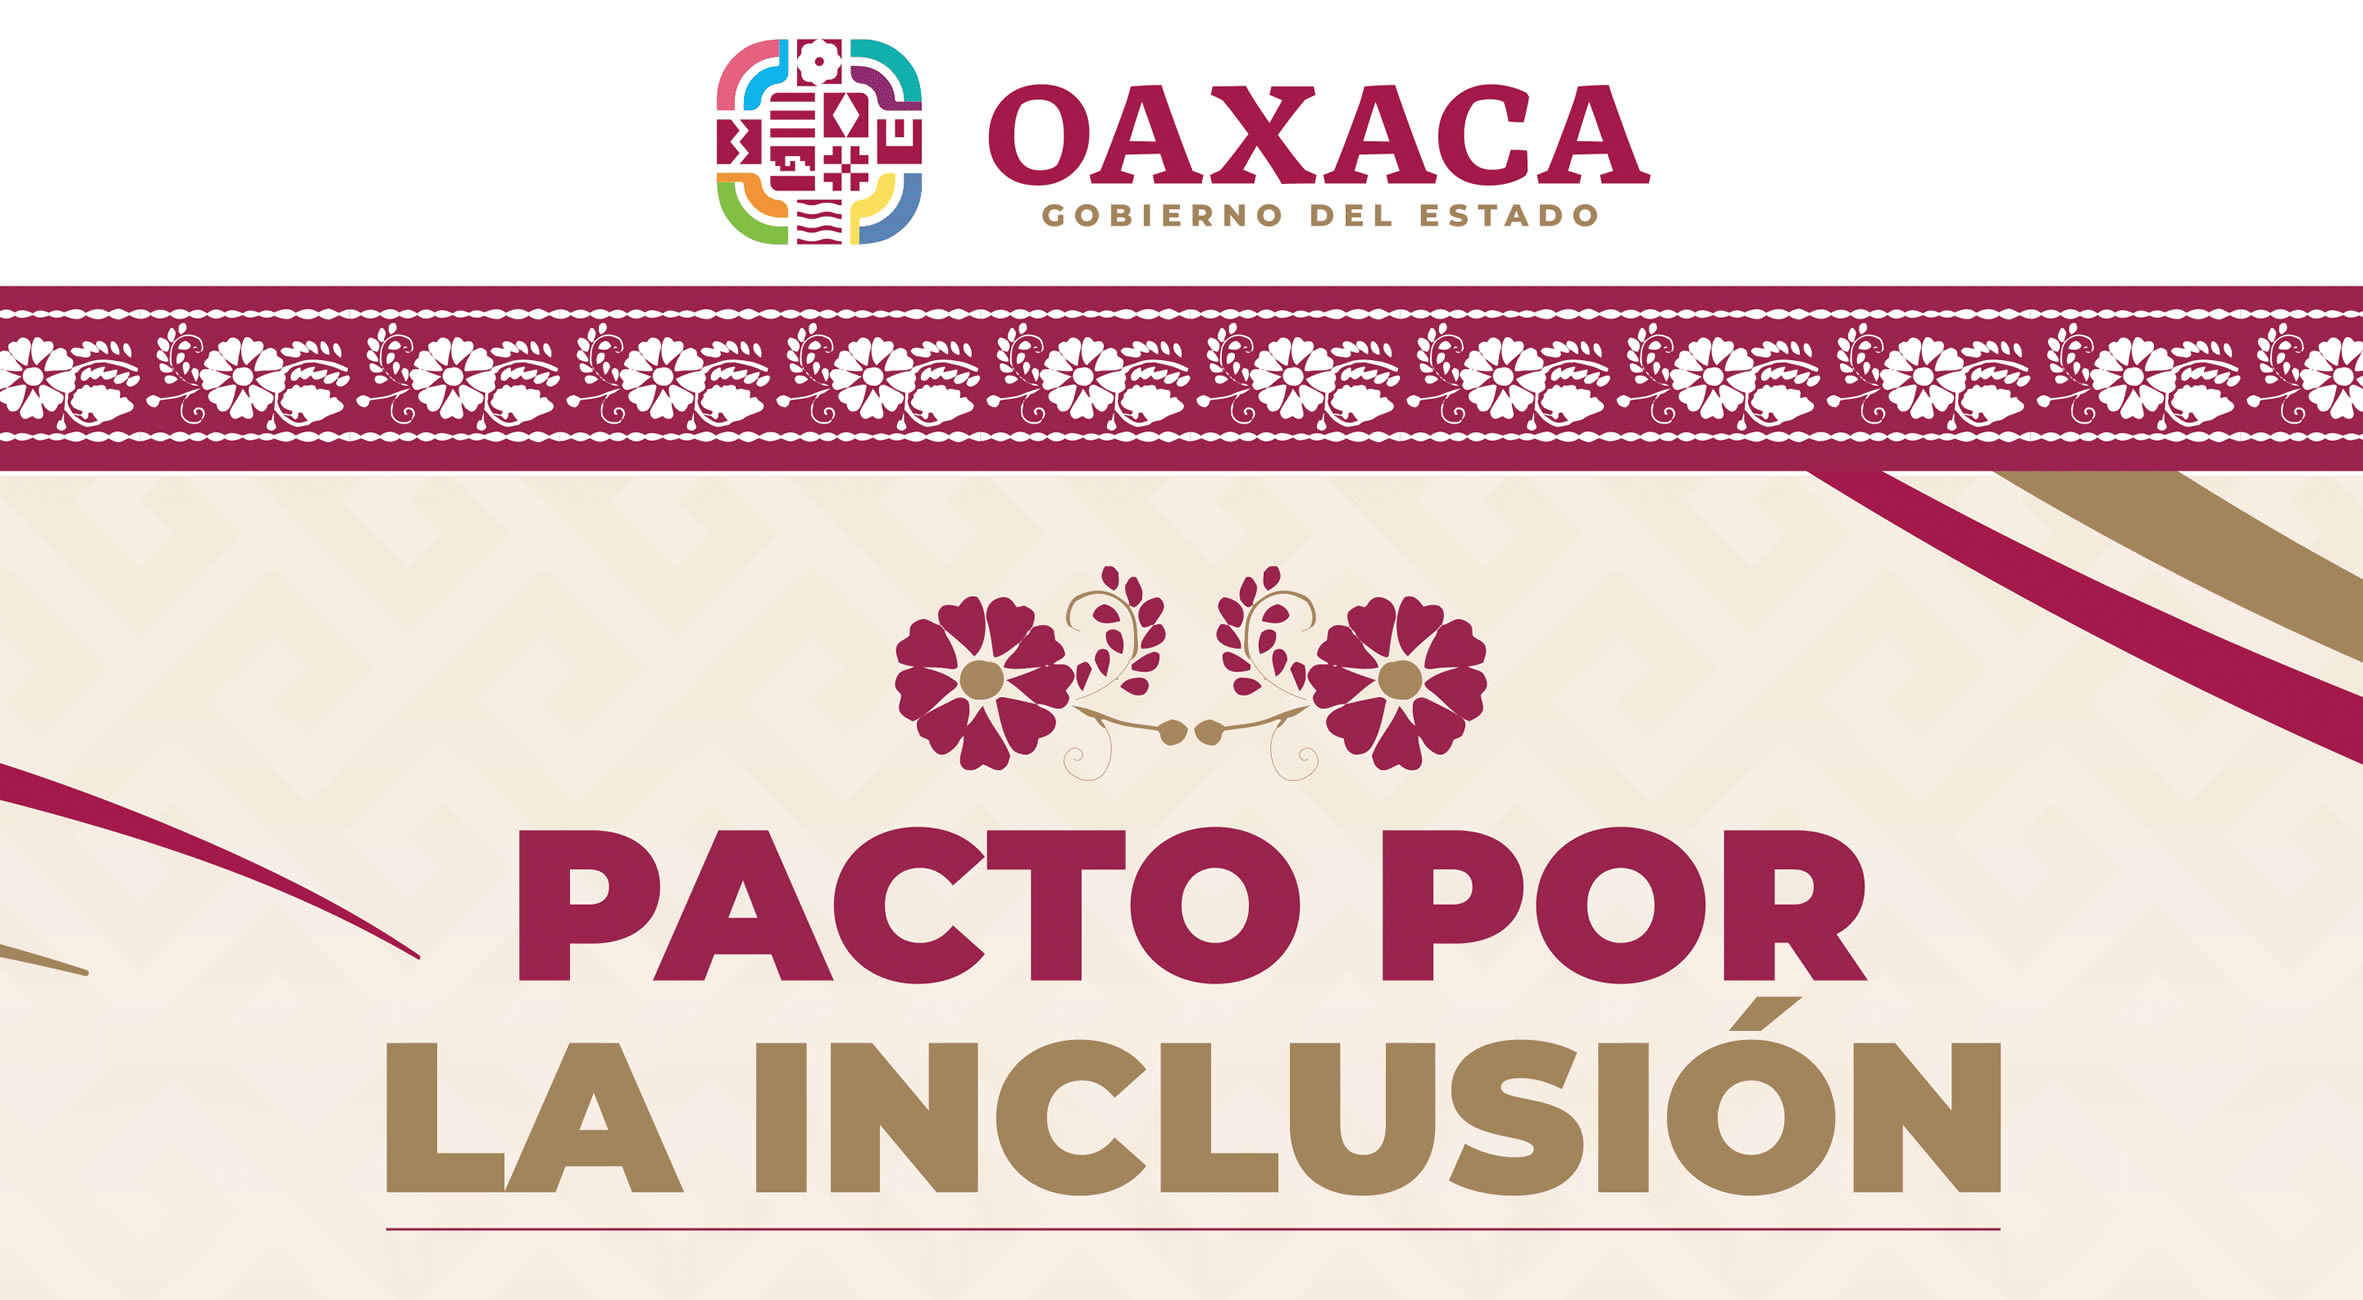 Pacto por la inclusión